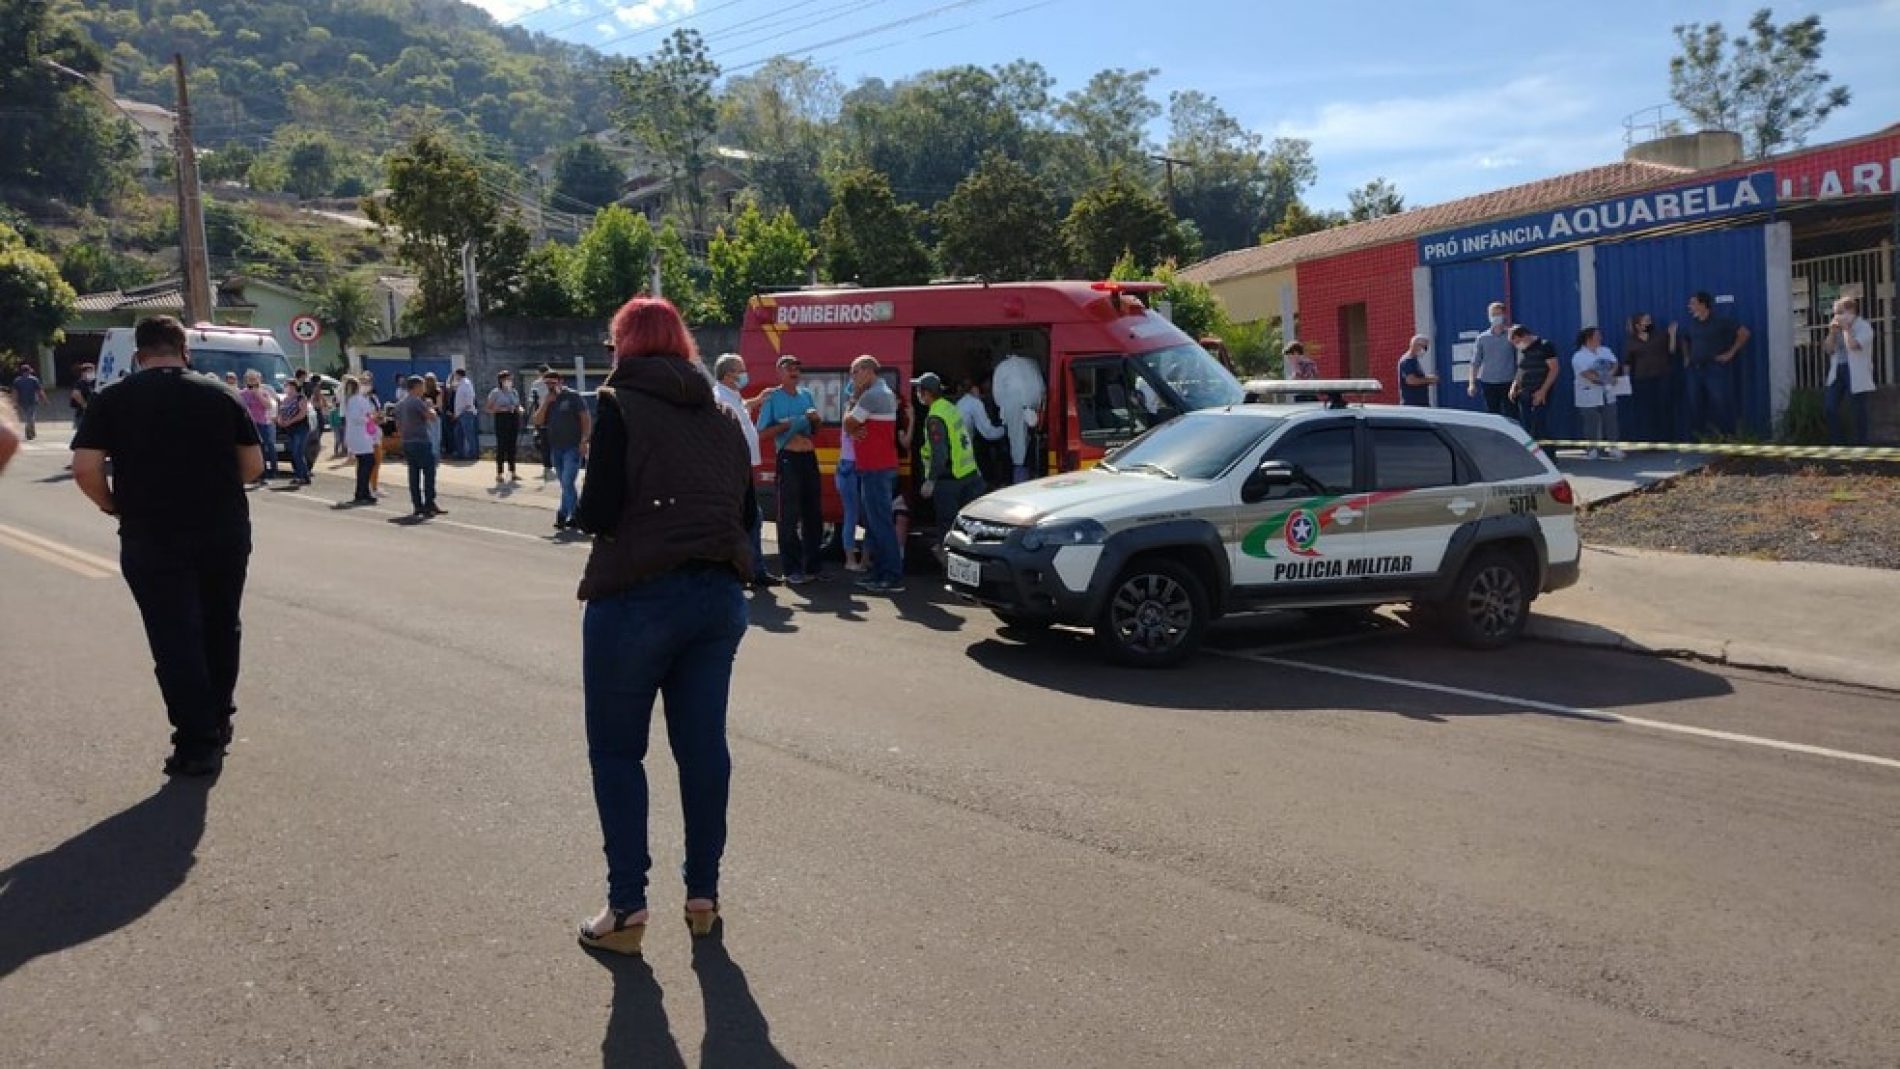 Jovem invade escola e mata três crianças e duas funcionárias em Santa Catarina